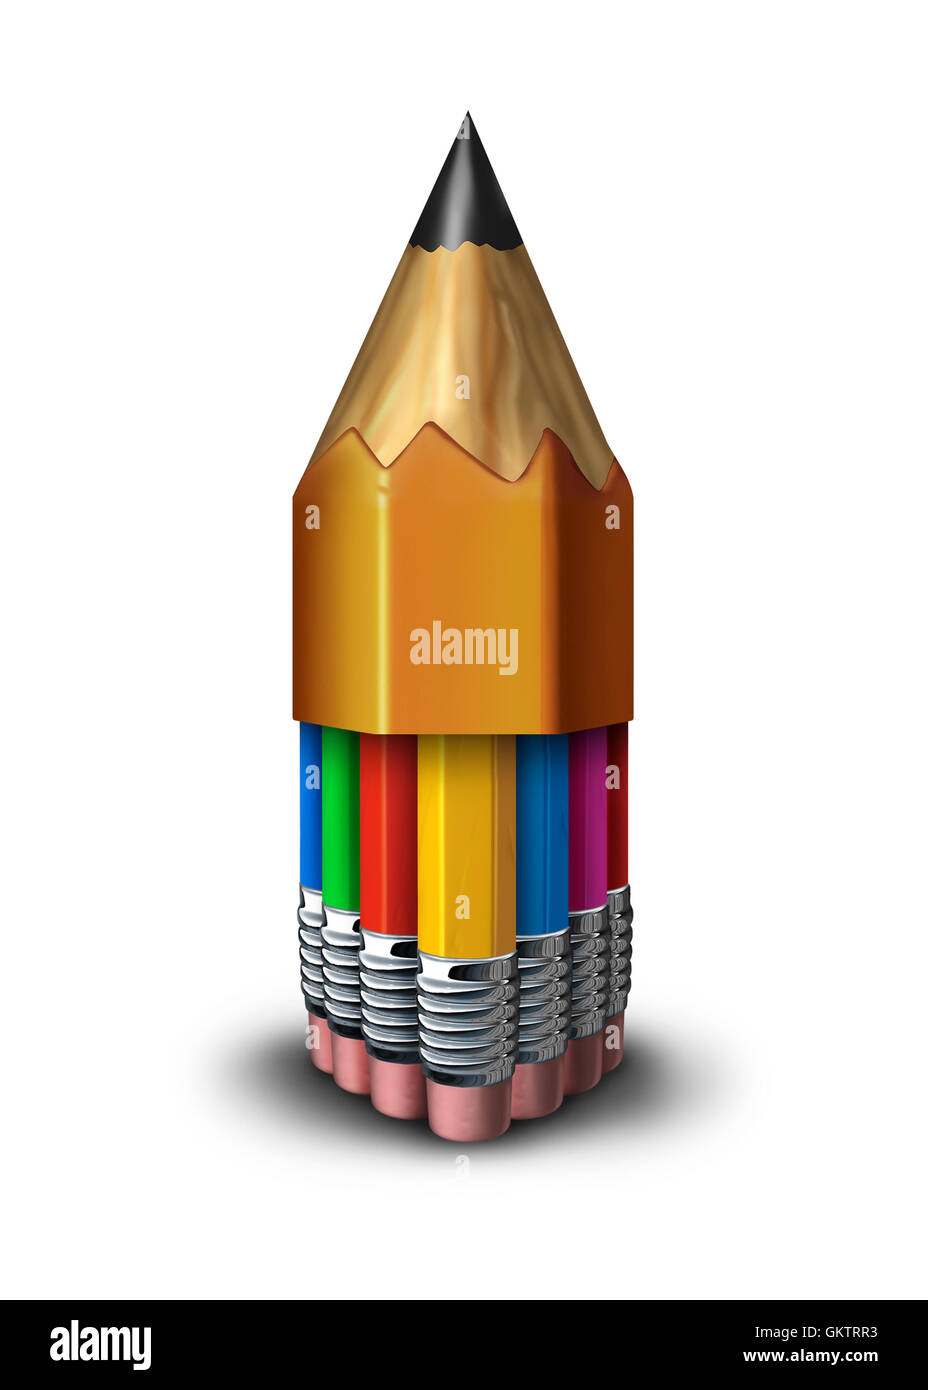 Gruppe und Team Bildung Lernkonzept zusammengefasst so viele verschiedene Bleistifte innerhalb einer großen Bleistift als Symbol für Schule Fakultät Studentenwerk oder voting Community gemeinsam zum Erfolg als eine 3D Darstellung. Stockfoto